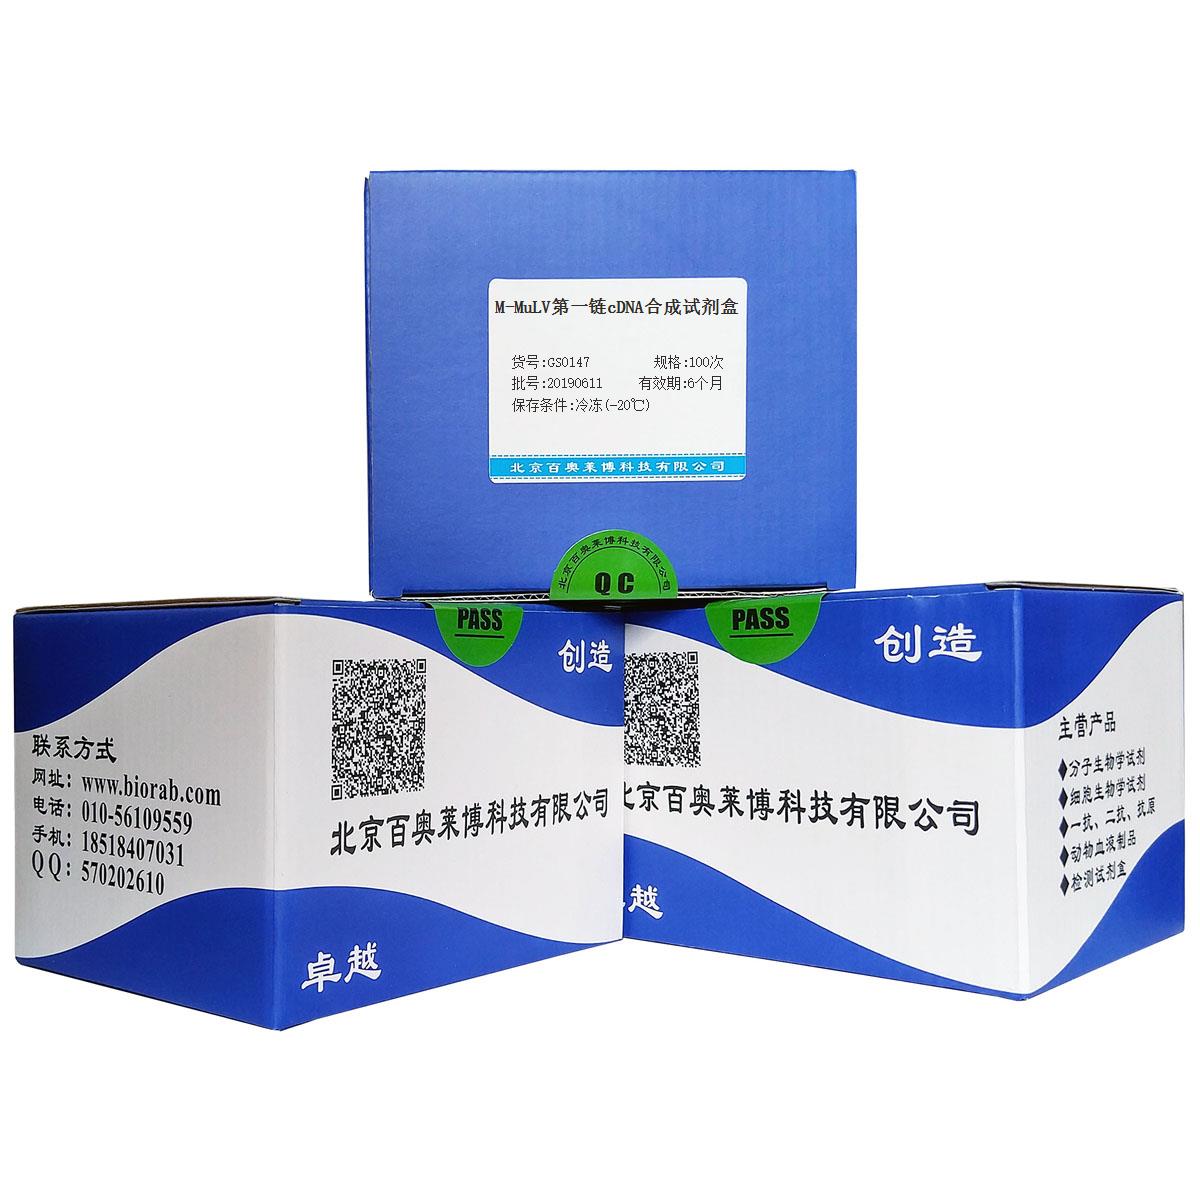 M-MuLV第一链cDNA合成试剂盒北京价格